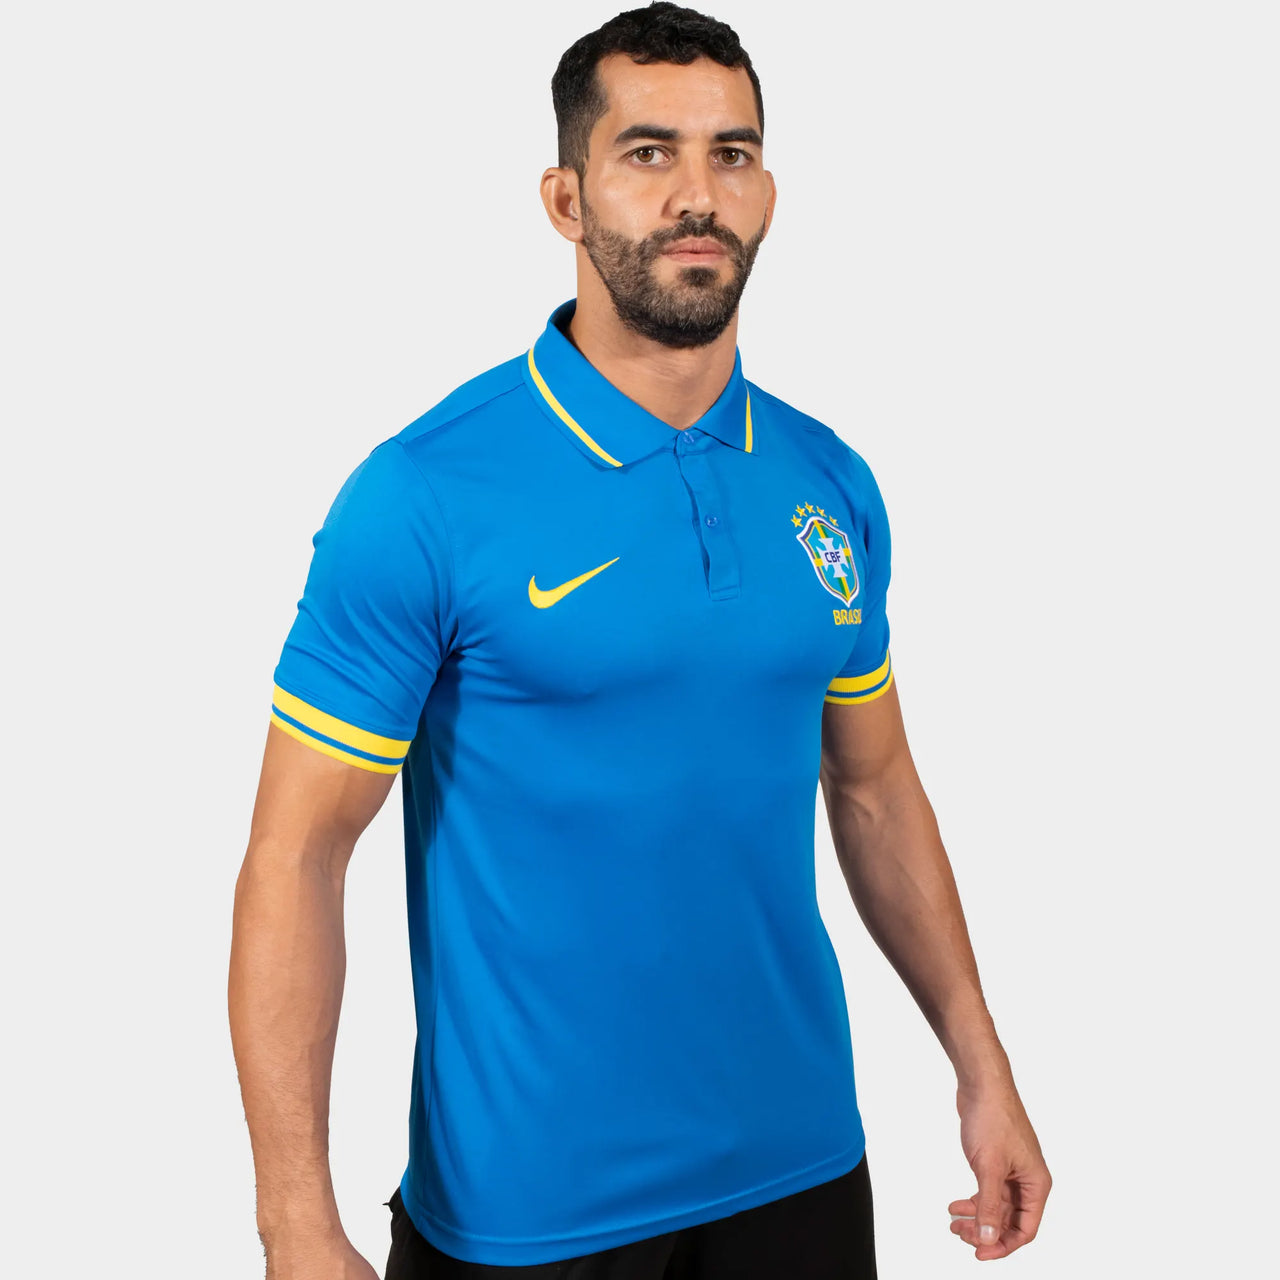 Brazil Men Polo Shirt Blue